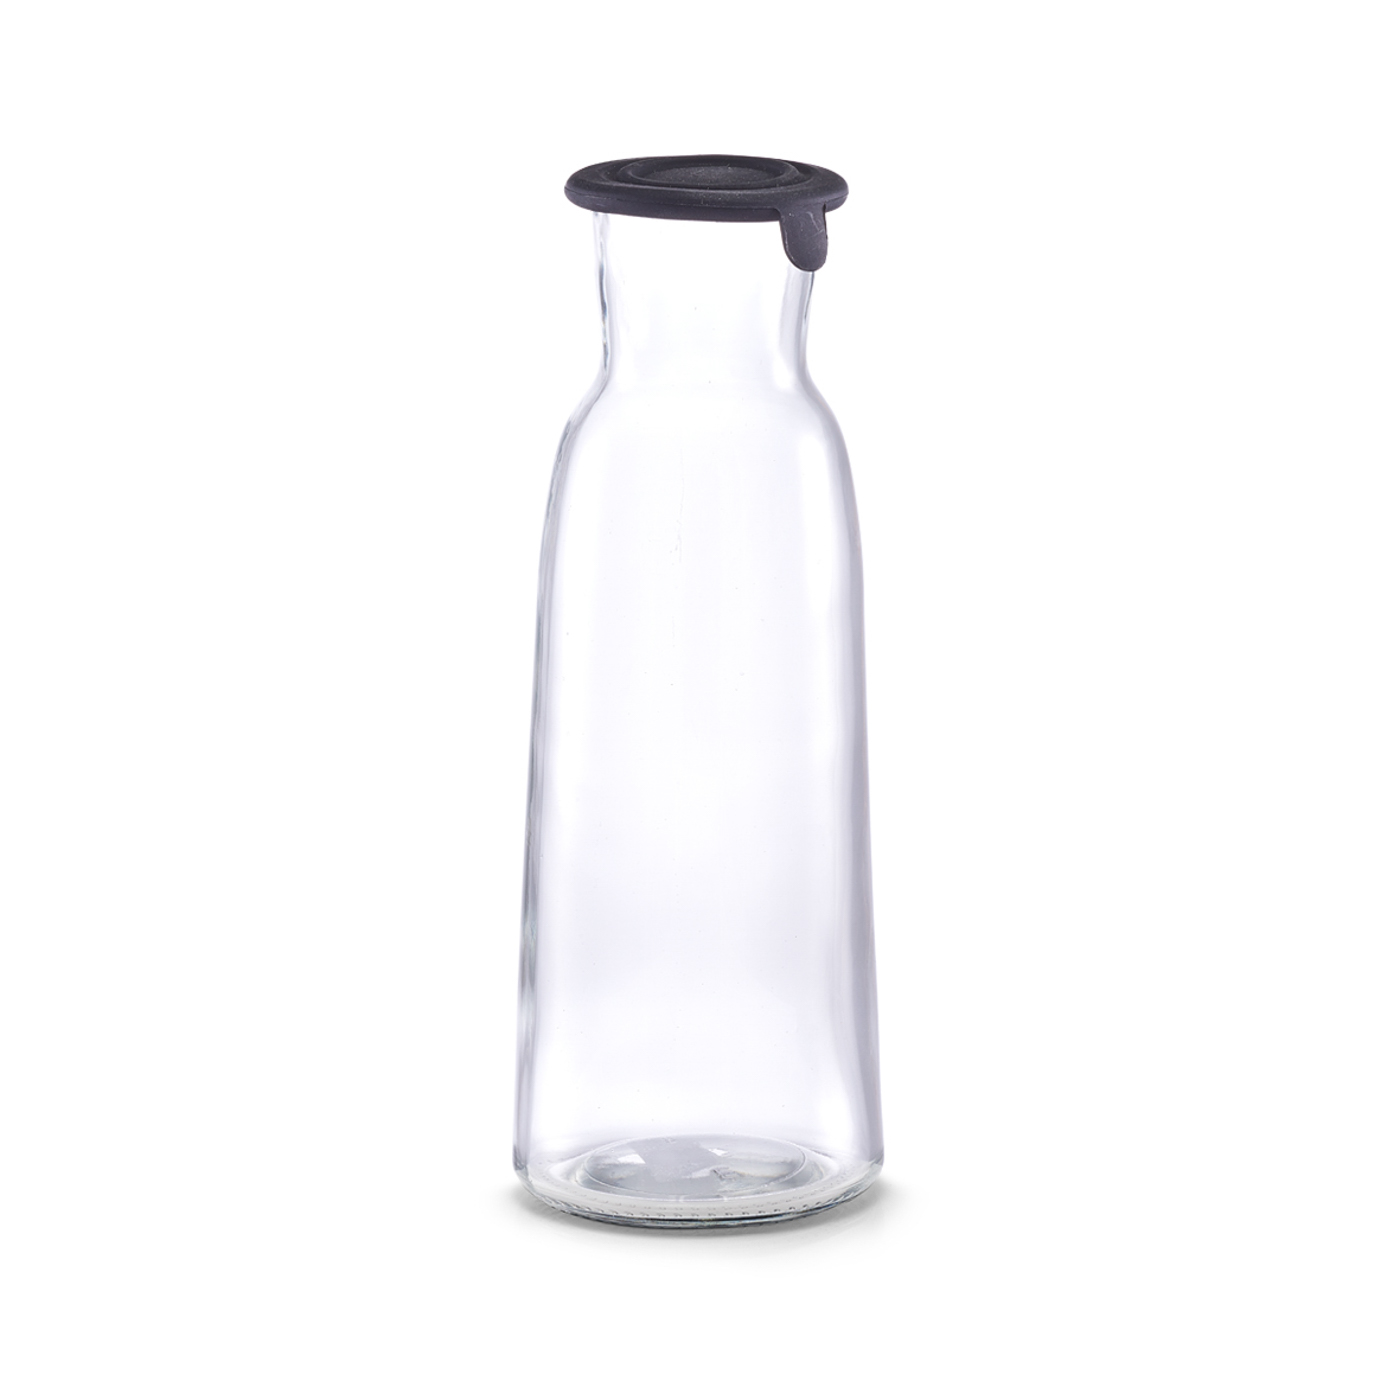 Glasflasche LITT, mit schwarzem Silikondeckel, Inhalt: 1 Liter, Durchmesser: 9,4 cm, Höhe: 25,7 cm